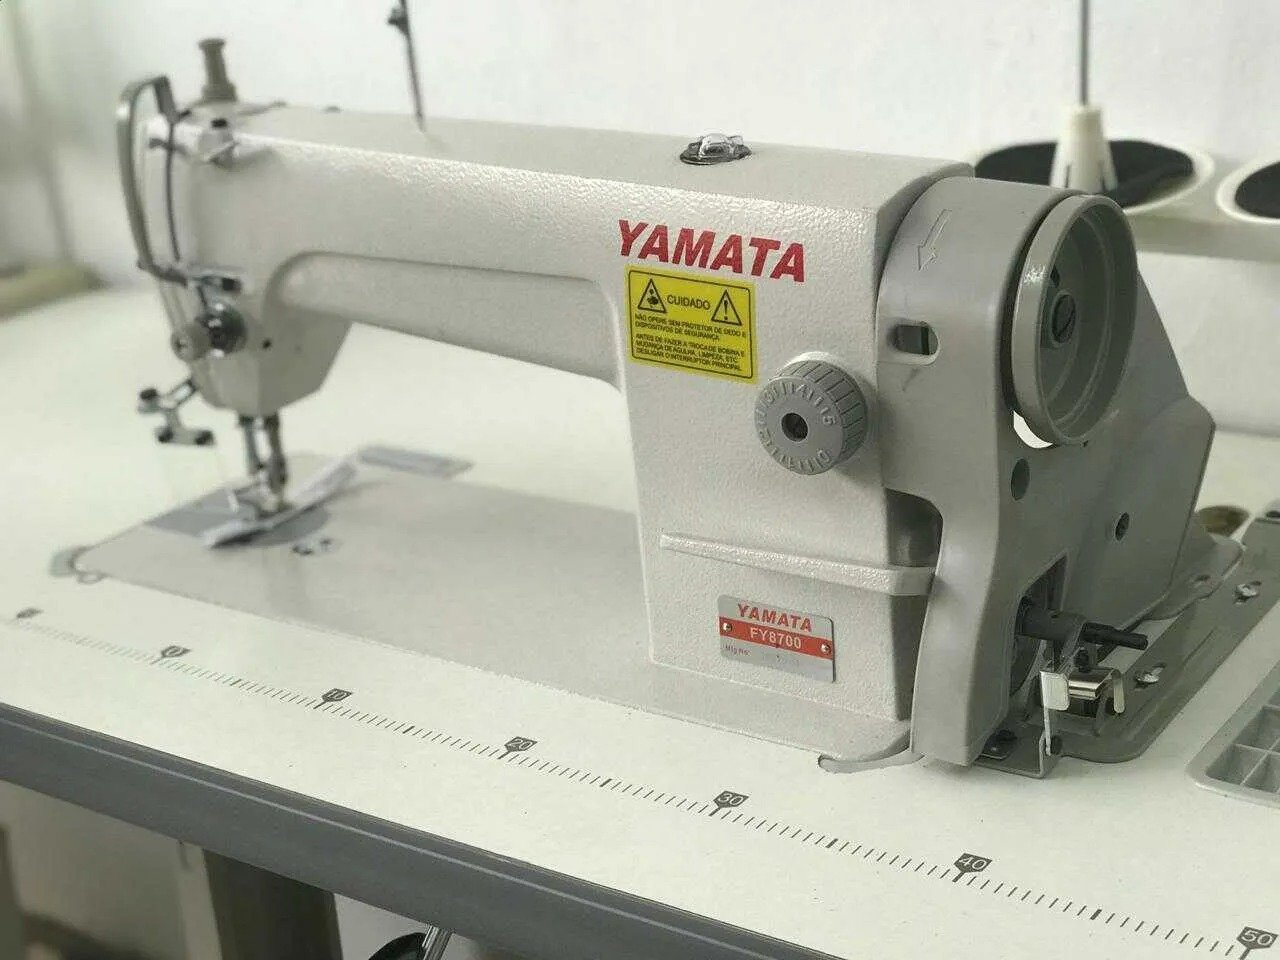 Reta Industrial Yamata Fy8700 Completa Ultimas Peças